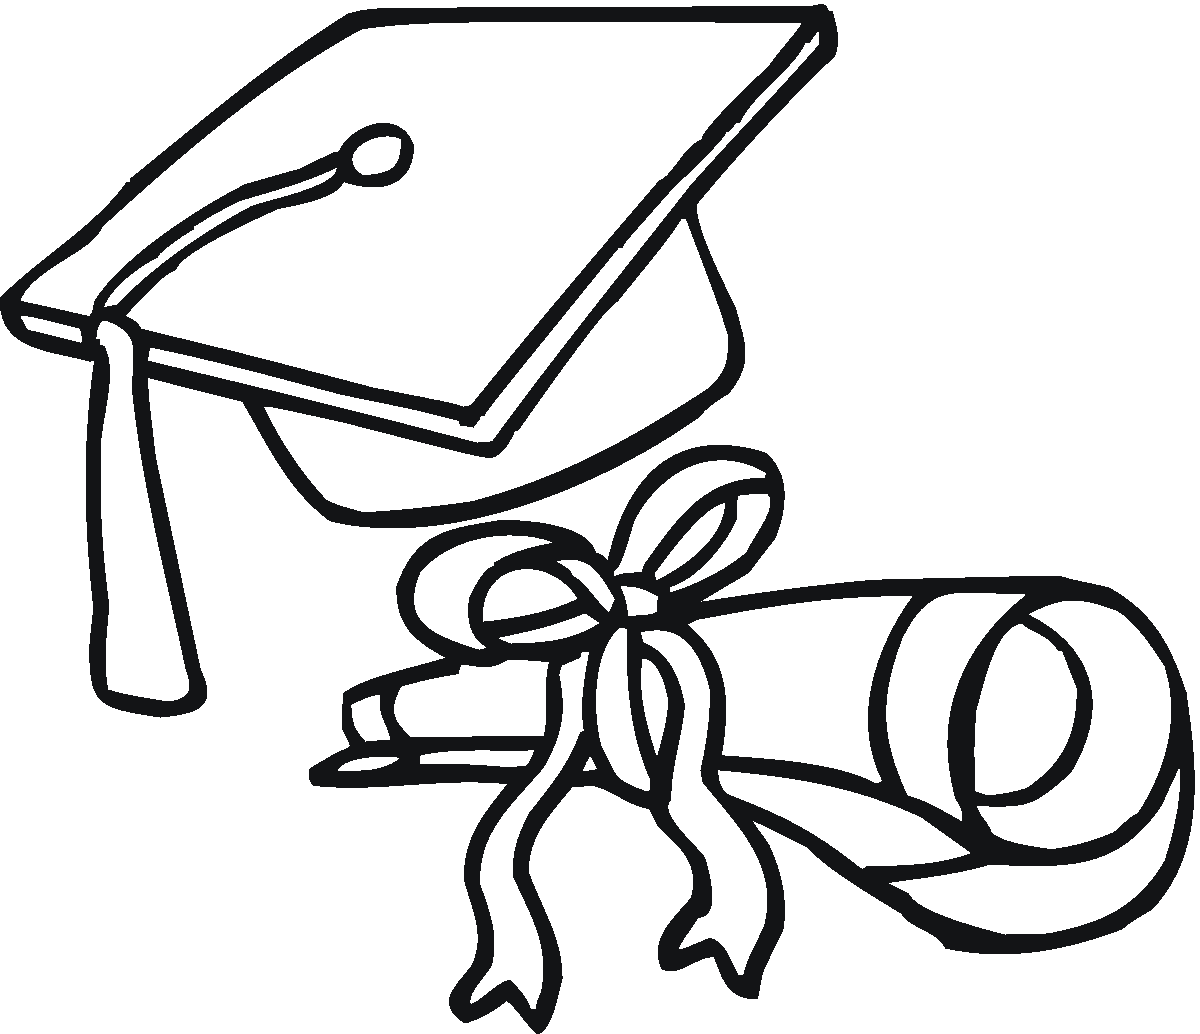 Graduation cap coloring page - Coloring Pages & Pictures - IMAGIXS